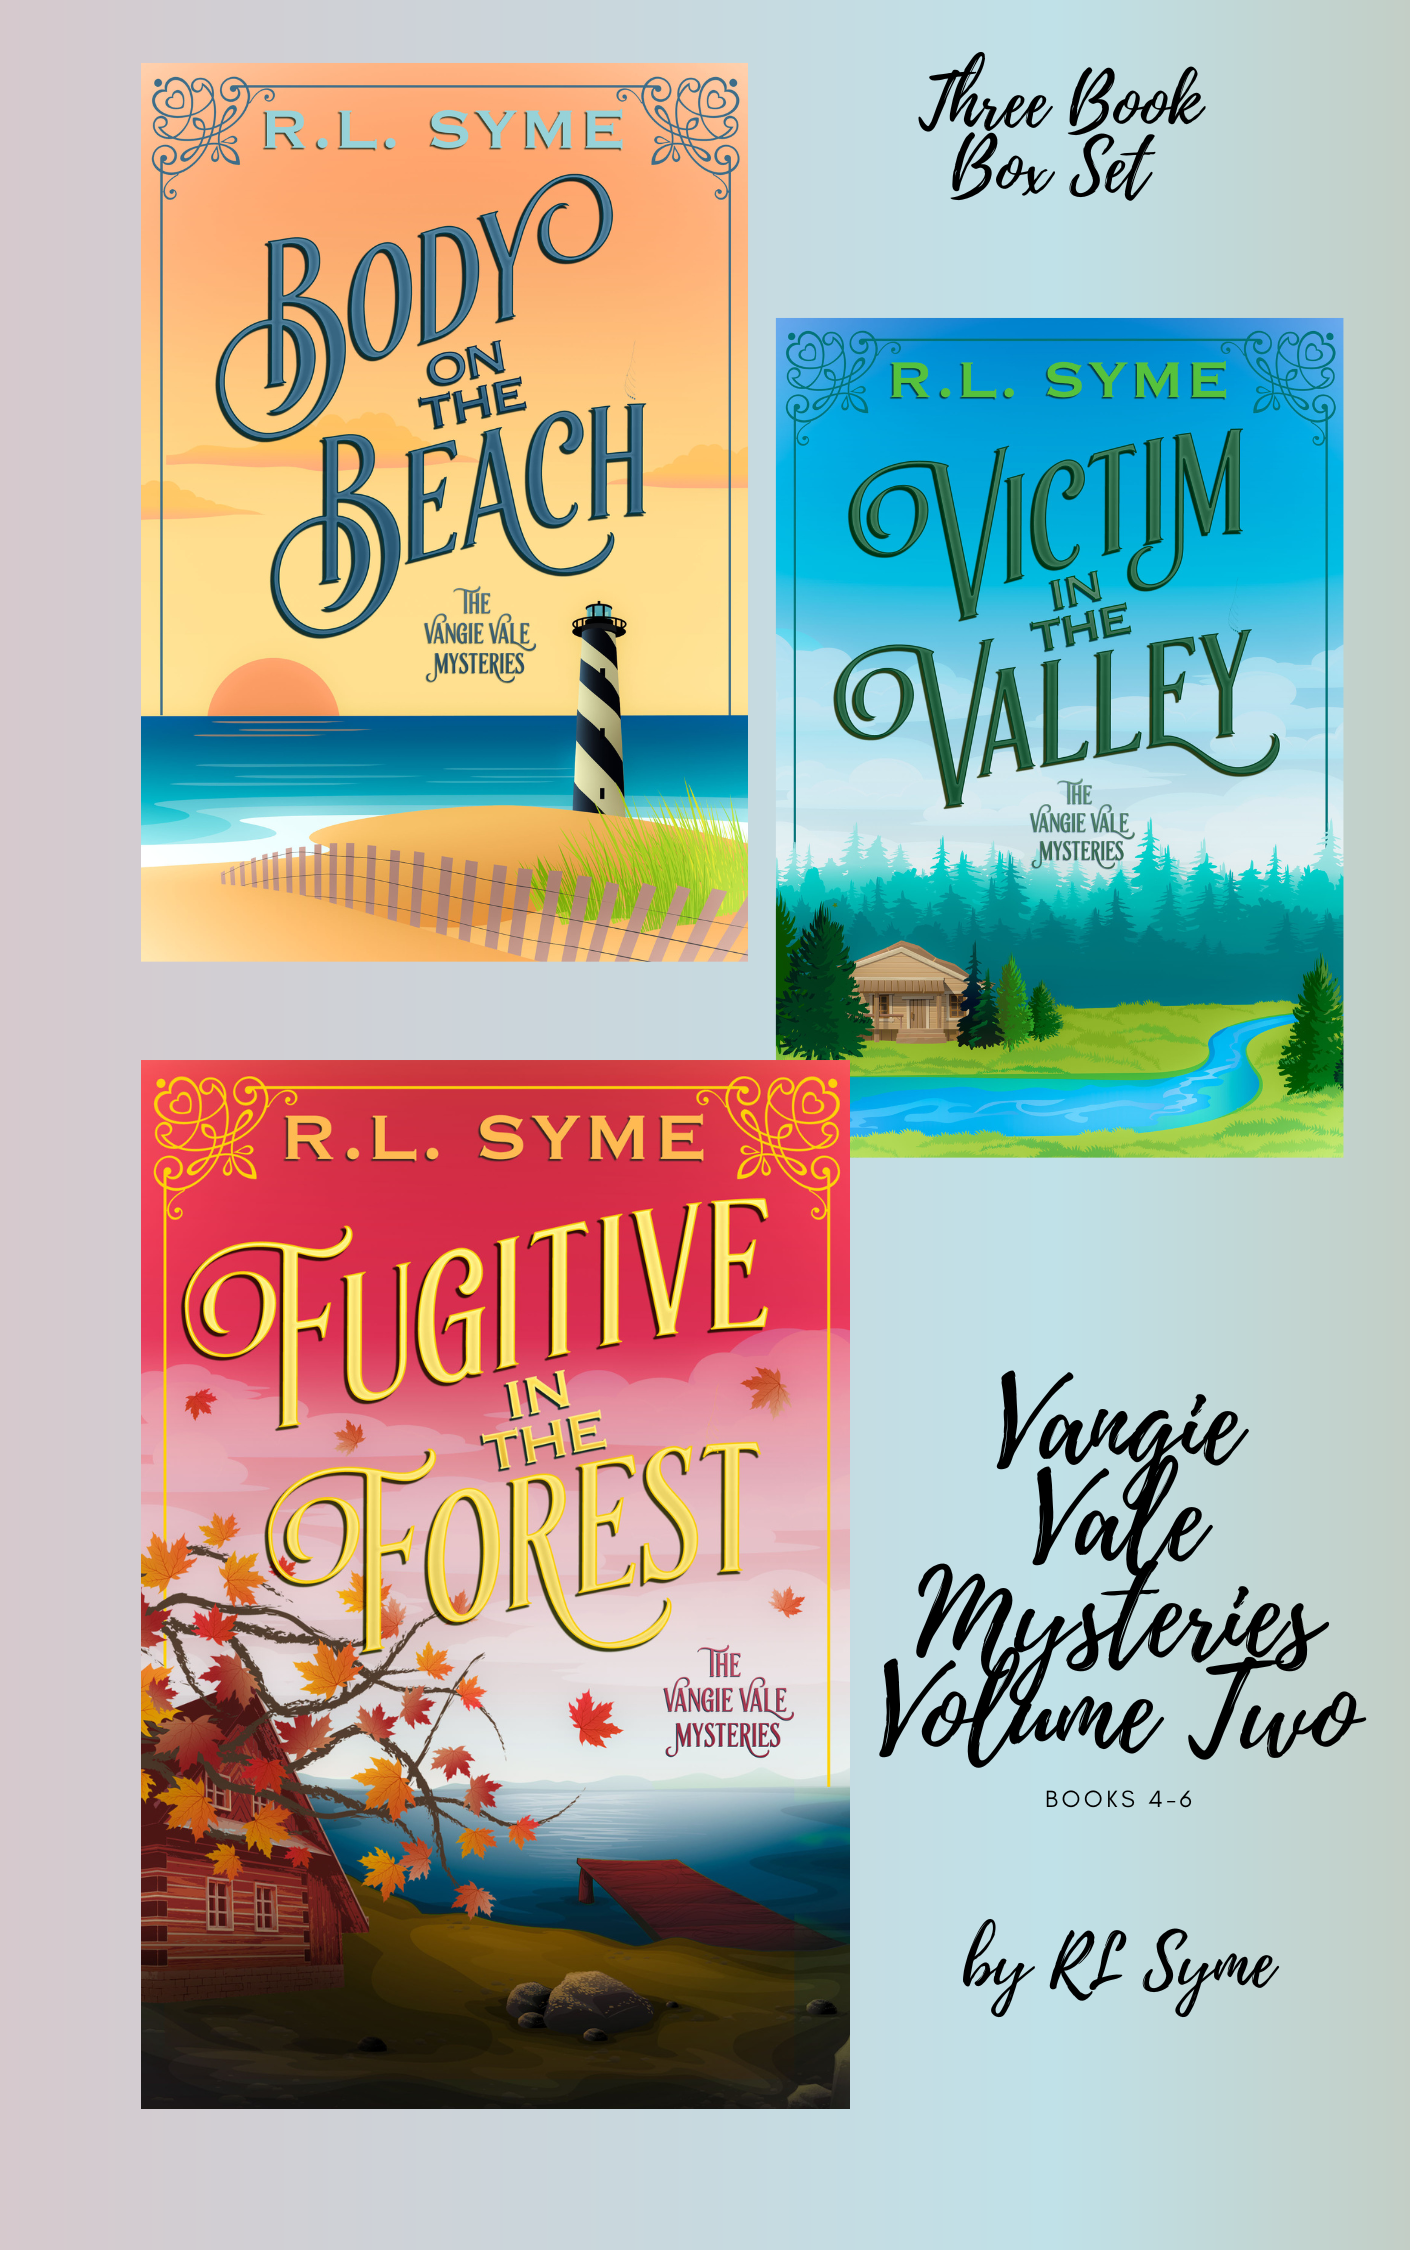 Vangie Vale Mysteries Volume Two